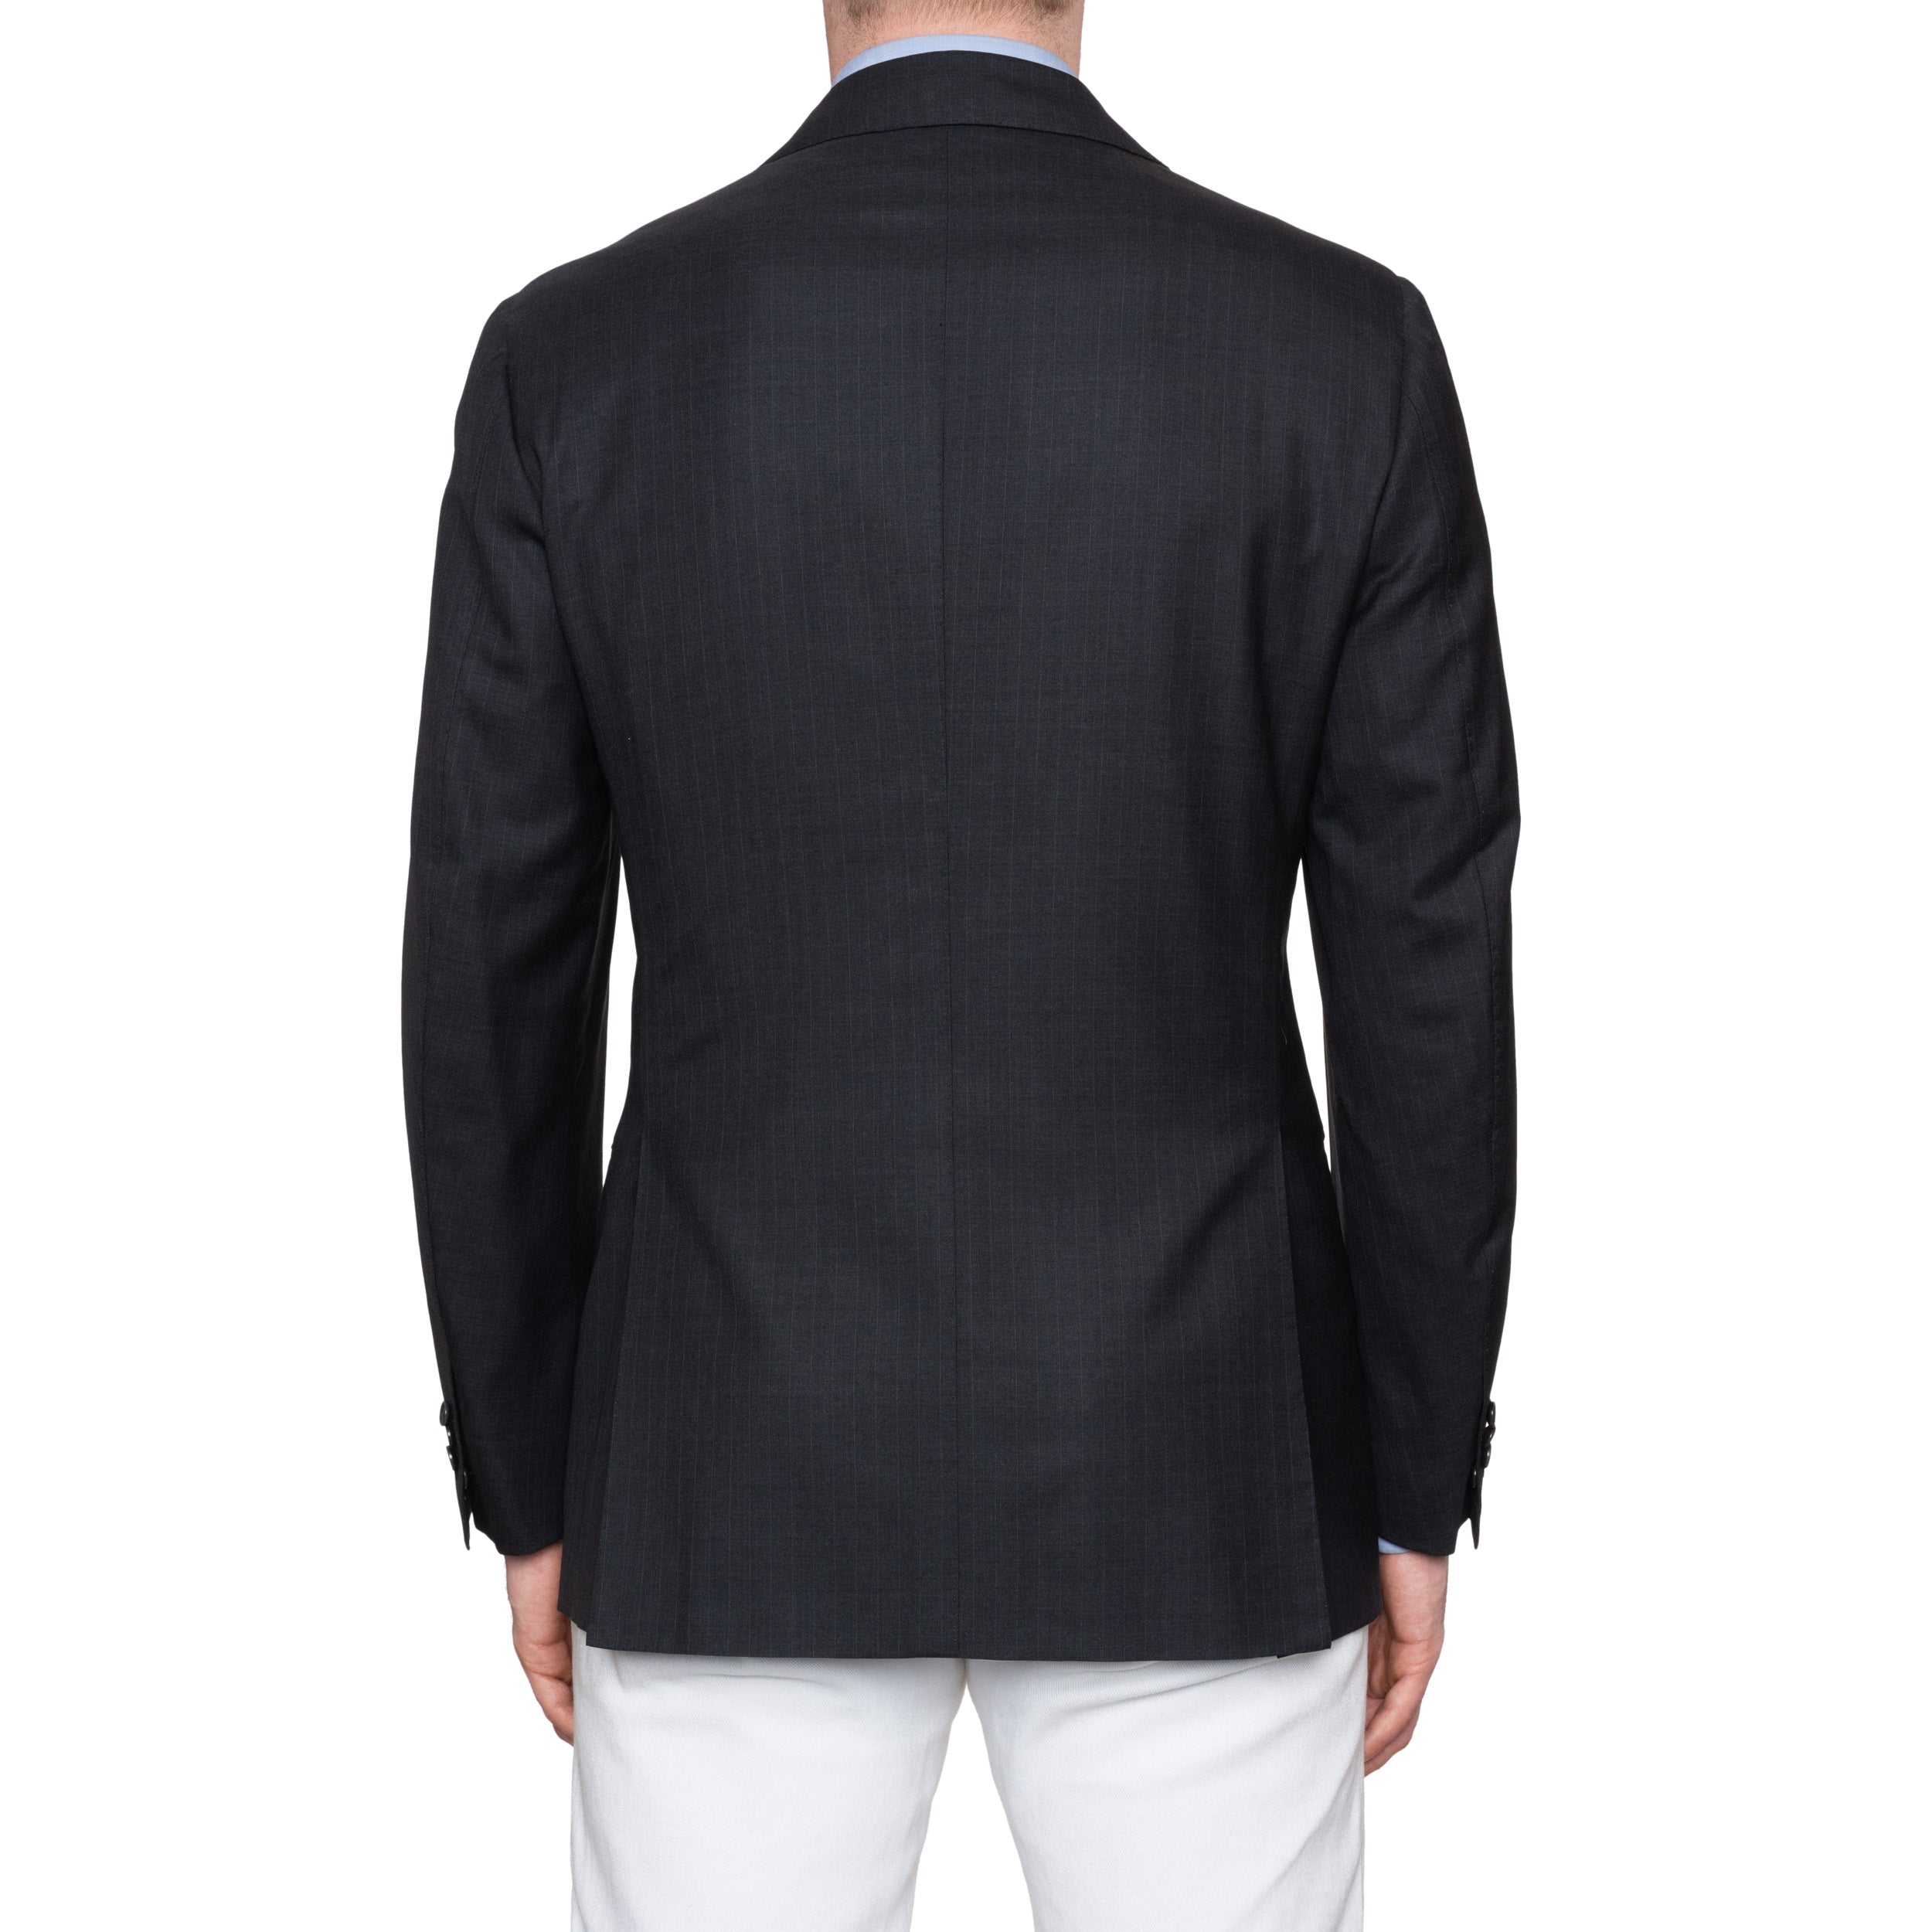 CESARE ATTOLINI for M. BARDELLI Gray Striped Wool Super 180's Jacket 50 NEW 40 CESARE ATTOLINI